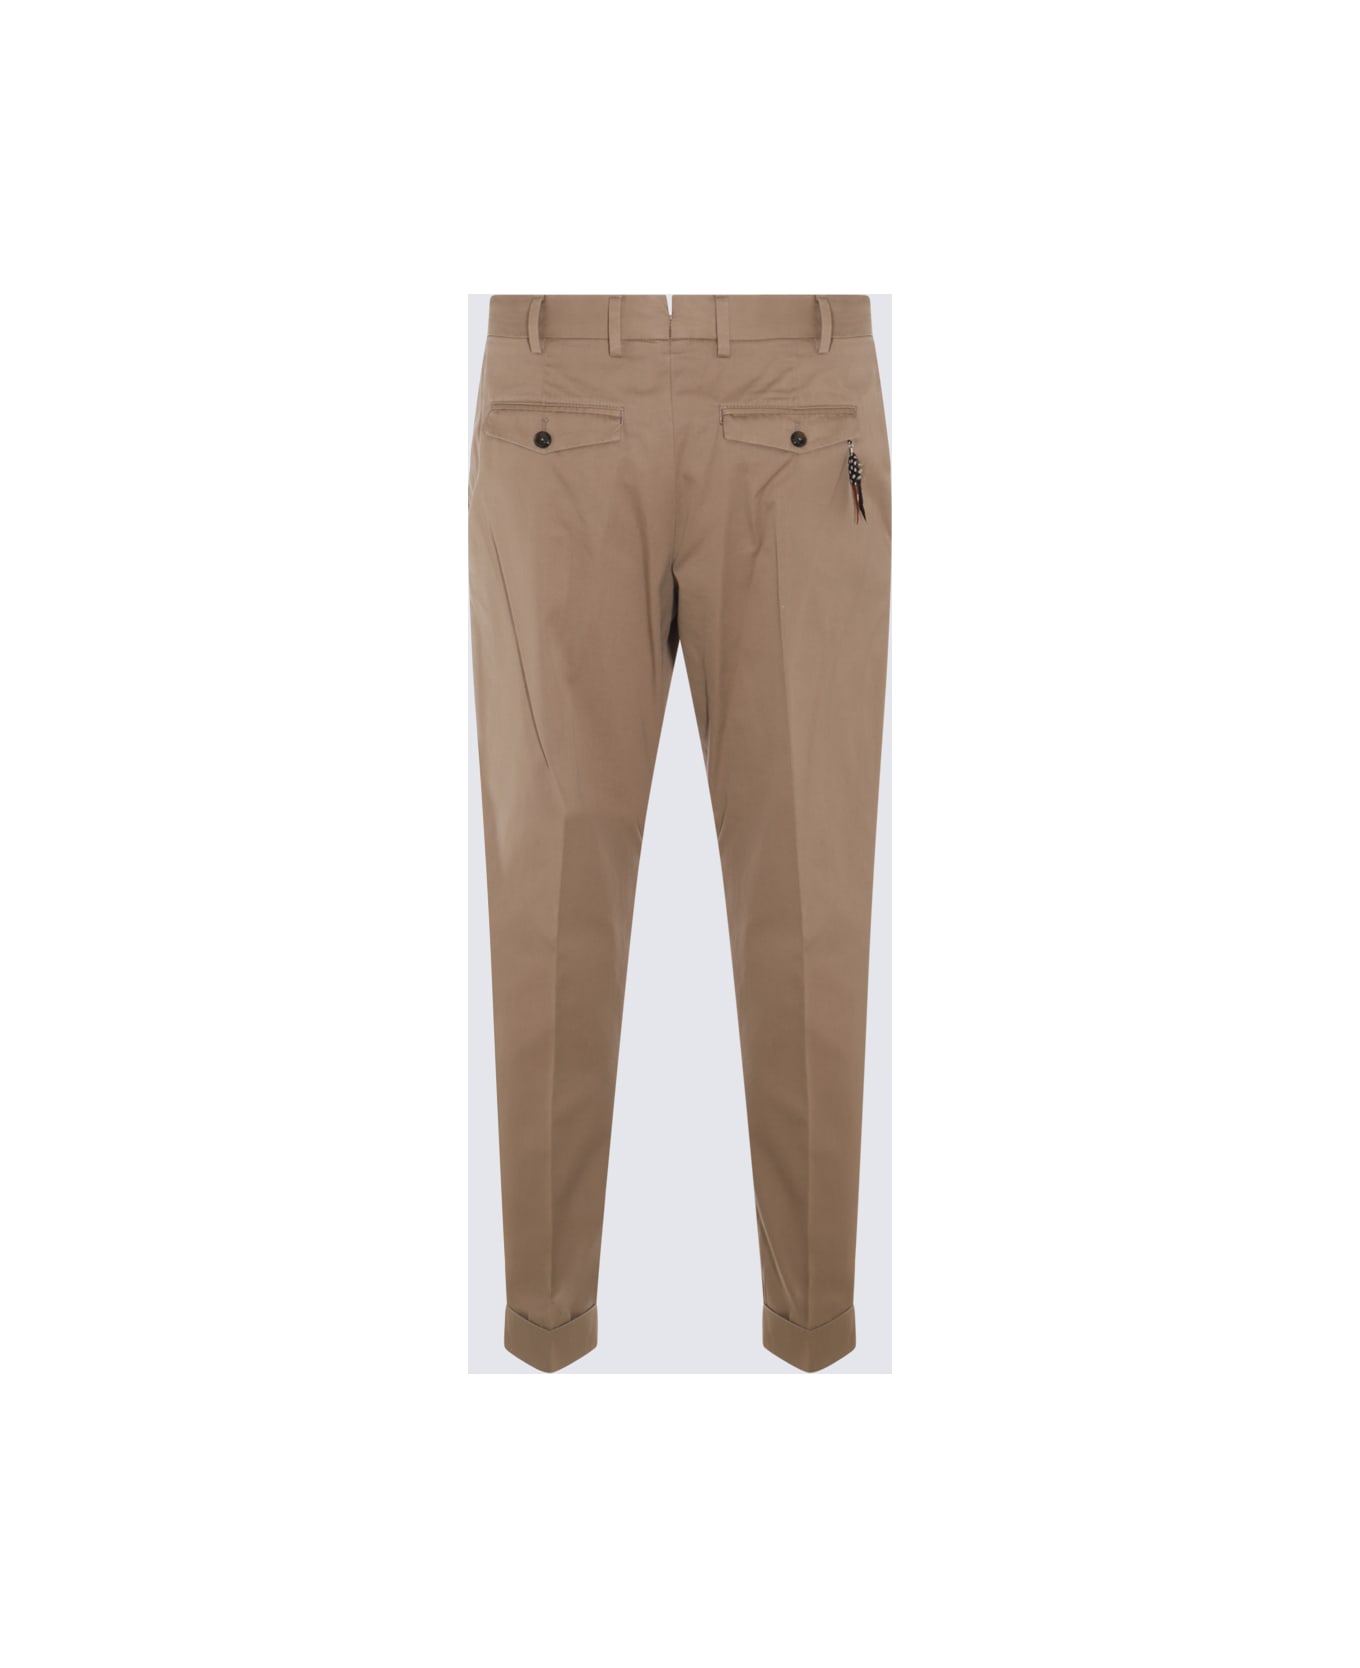 PT Torino Beige Cotton Pants - Coloniale